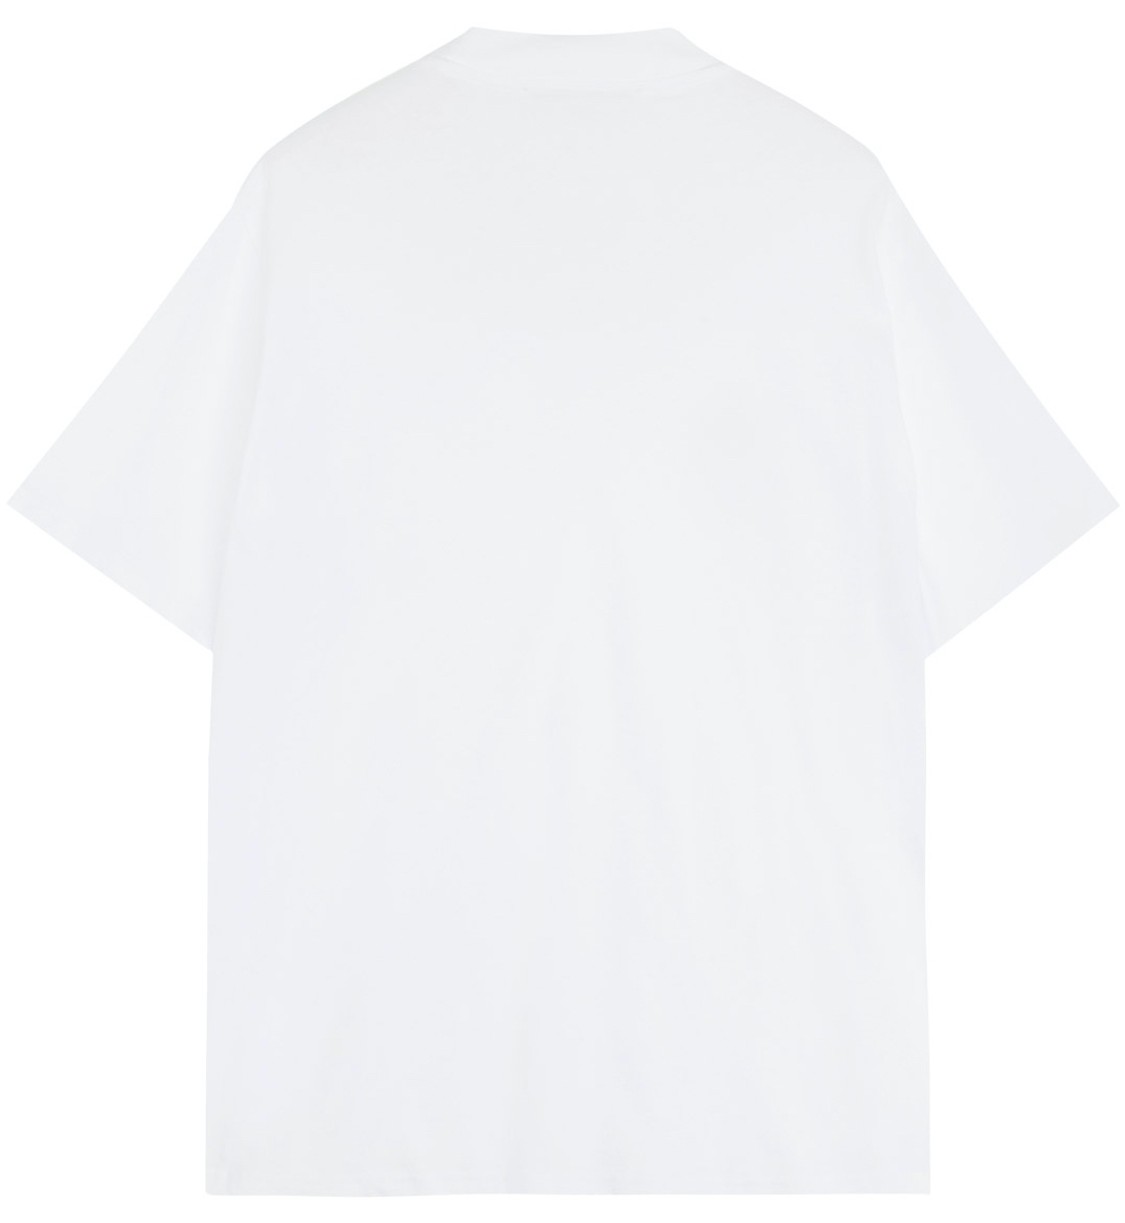 shop Tela  T-shirts: T-shirts Tela, modello Saigo, manica corta, fit regolare, con dettaglio frontale, tono su tono.

Composizione: 100% cotone.
 number 2607